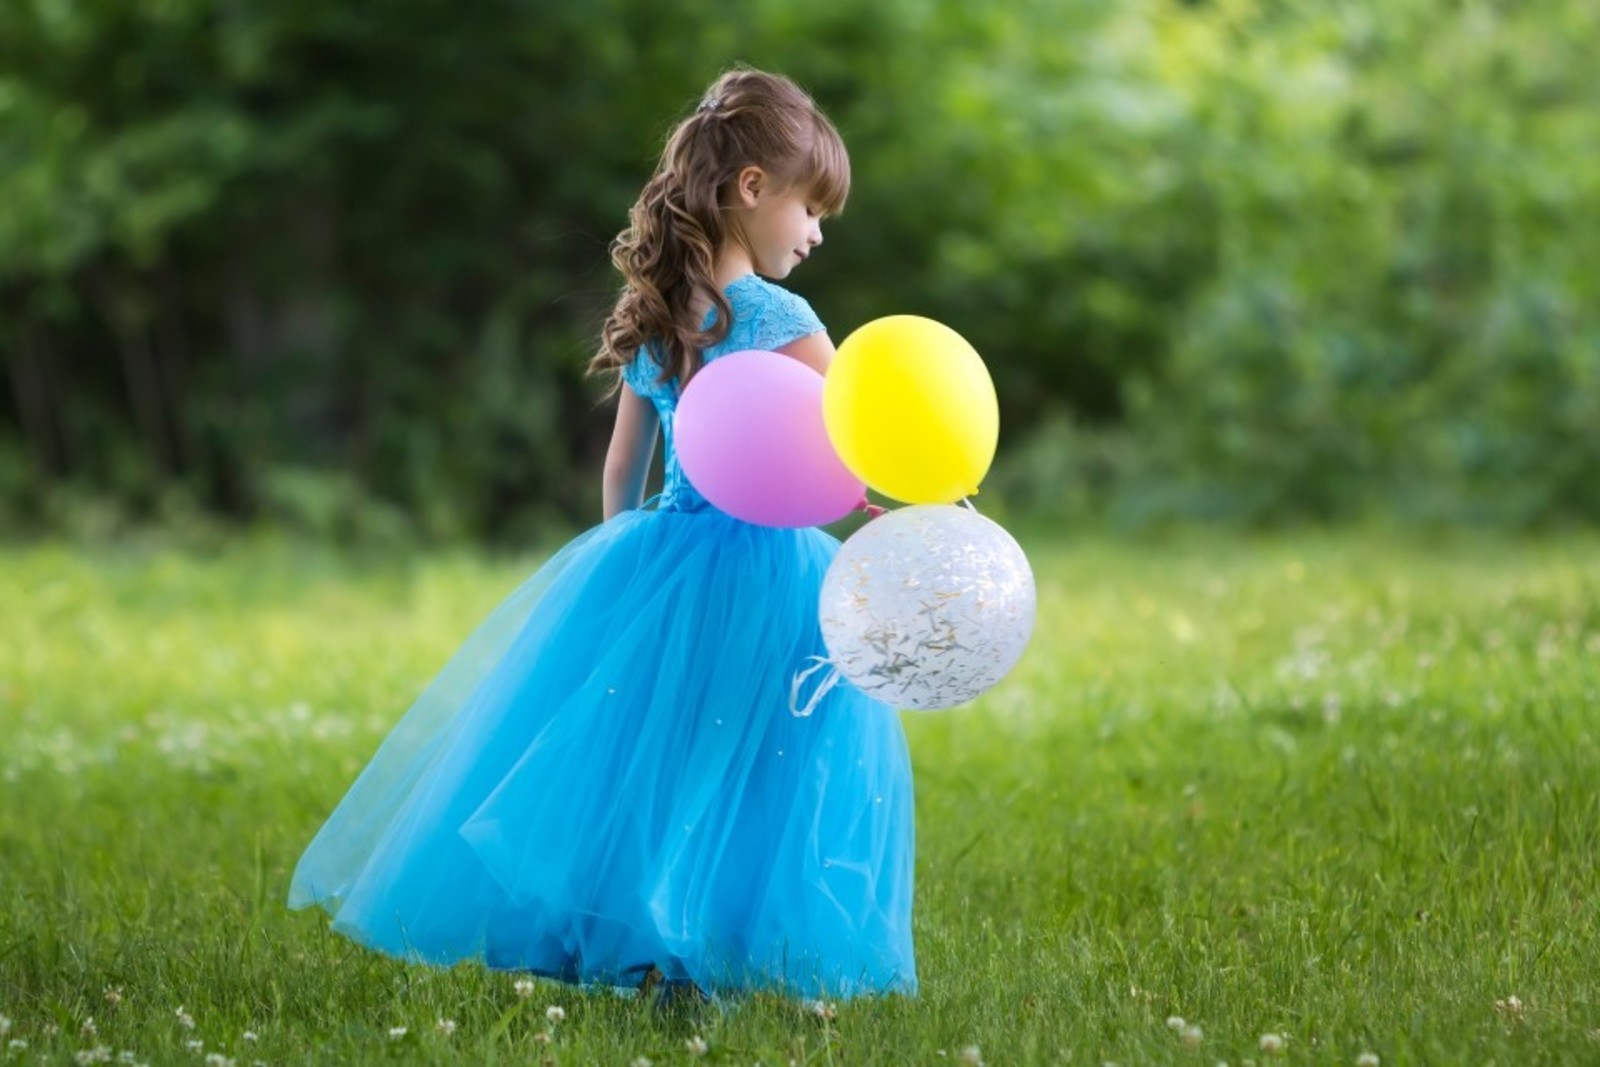 dievcatko v modrych satach s farebnymi balonmi